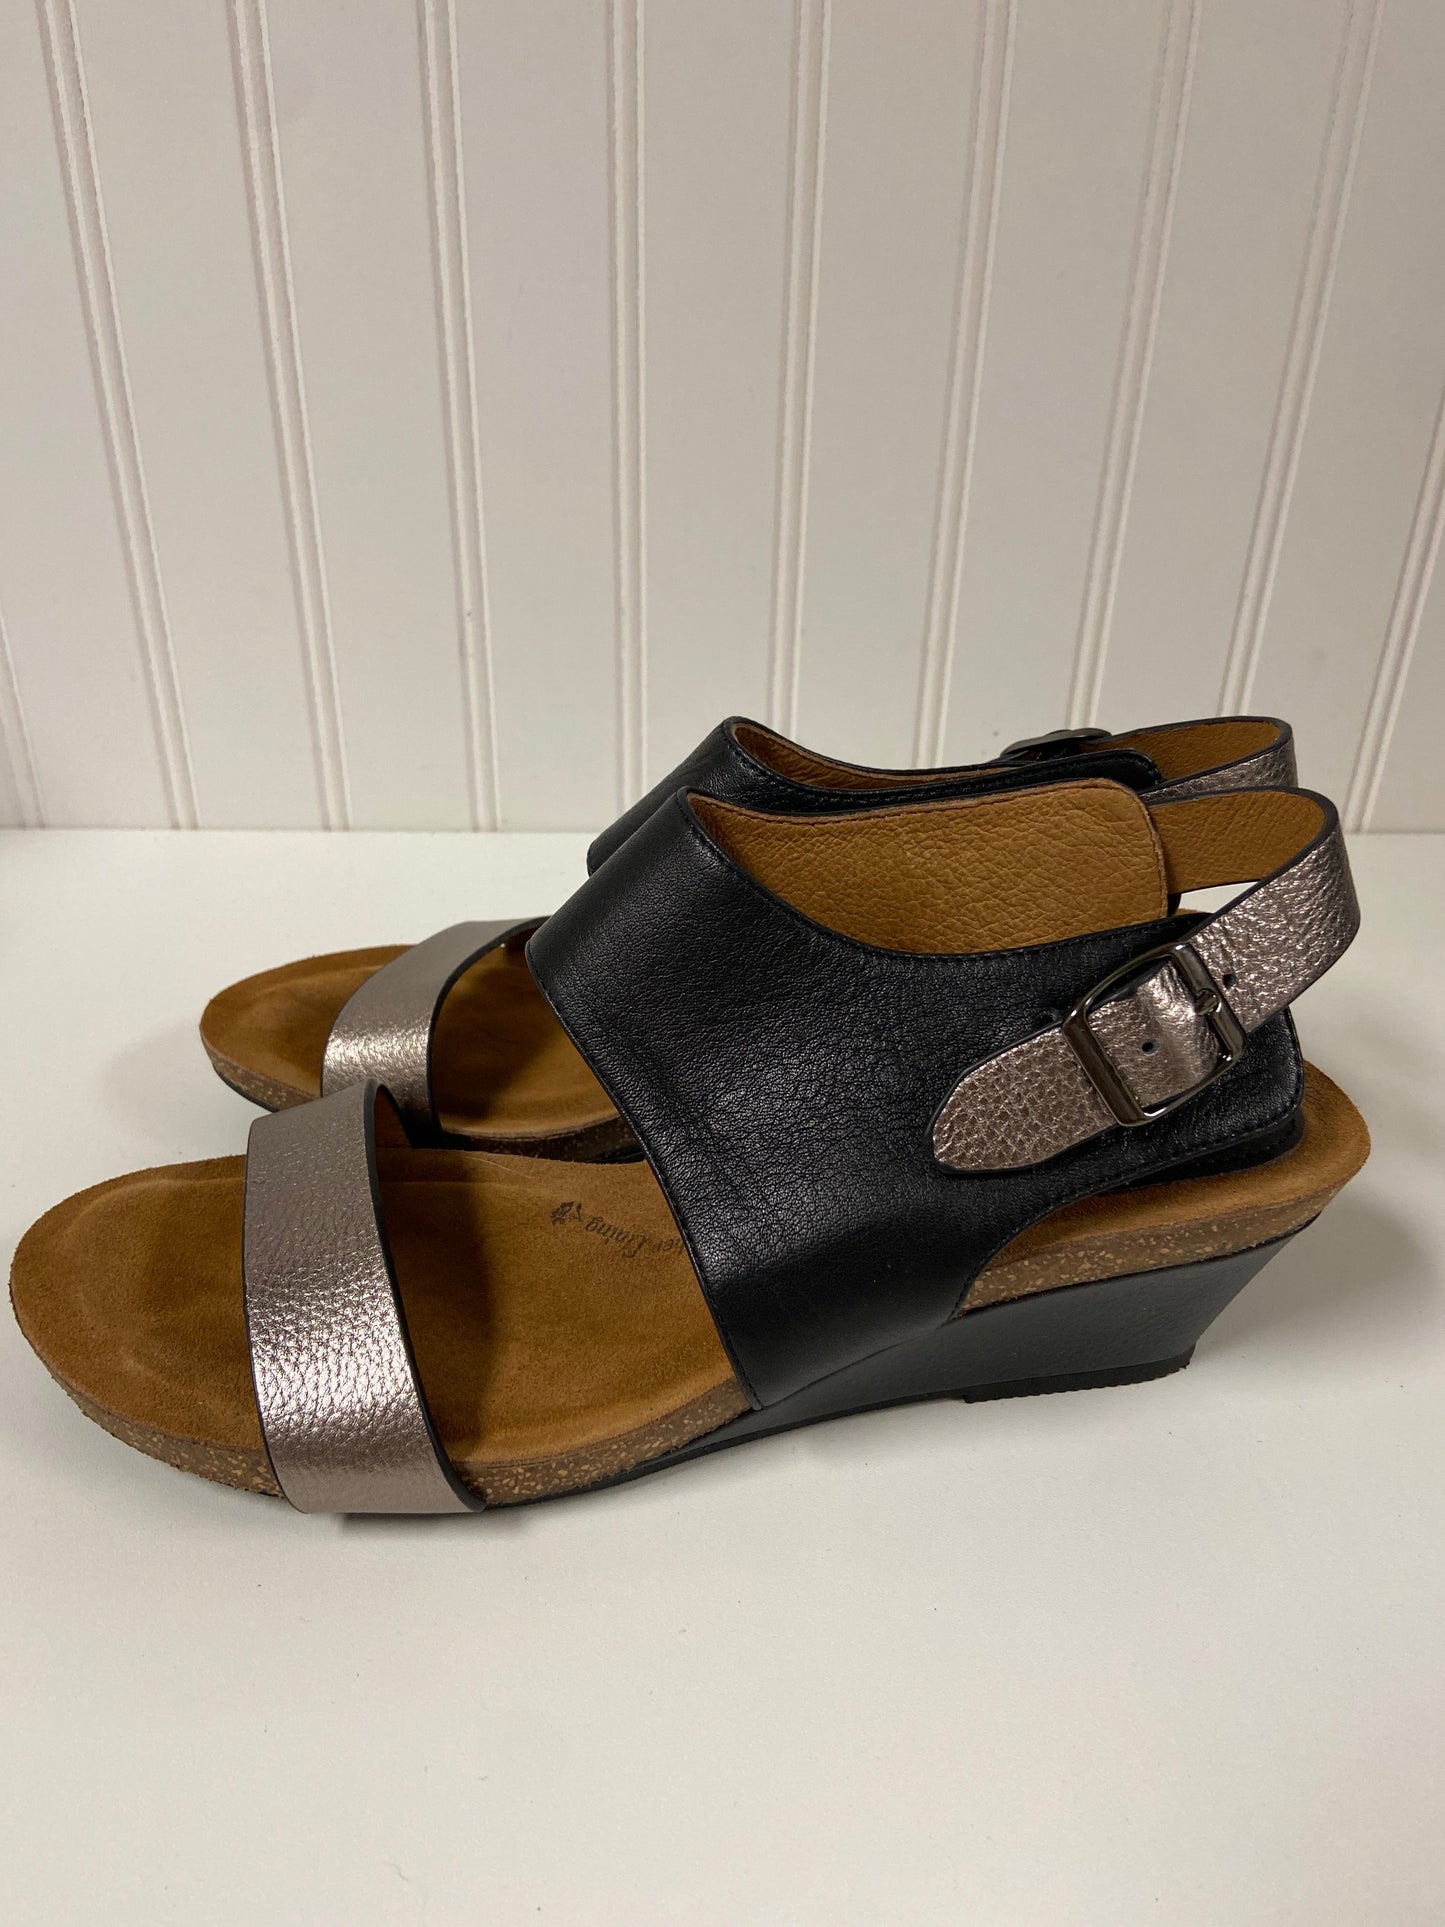 Black Sandals Heels Wedge Sofft, Size 8